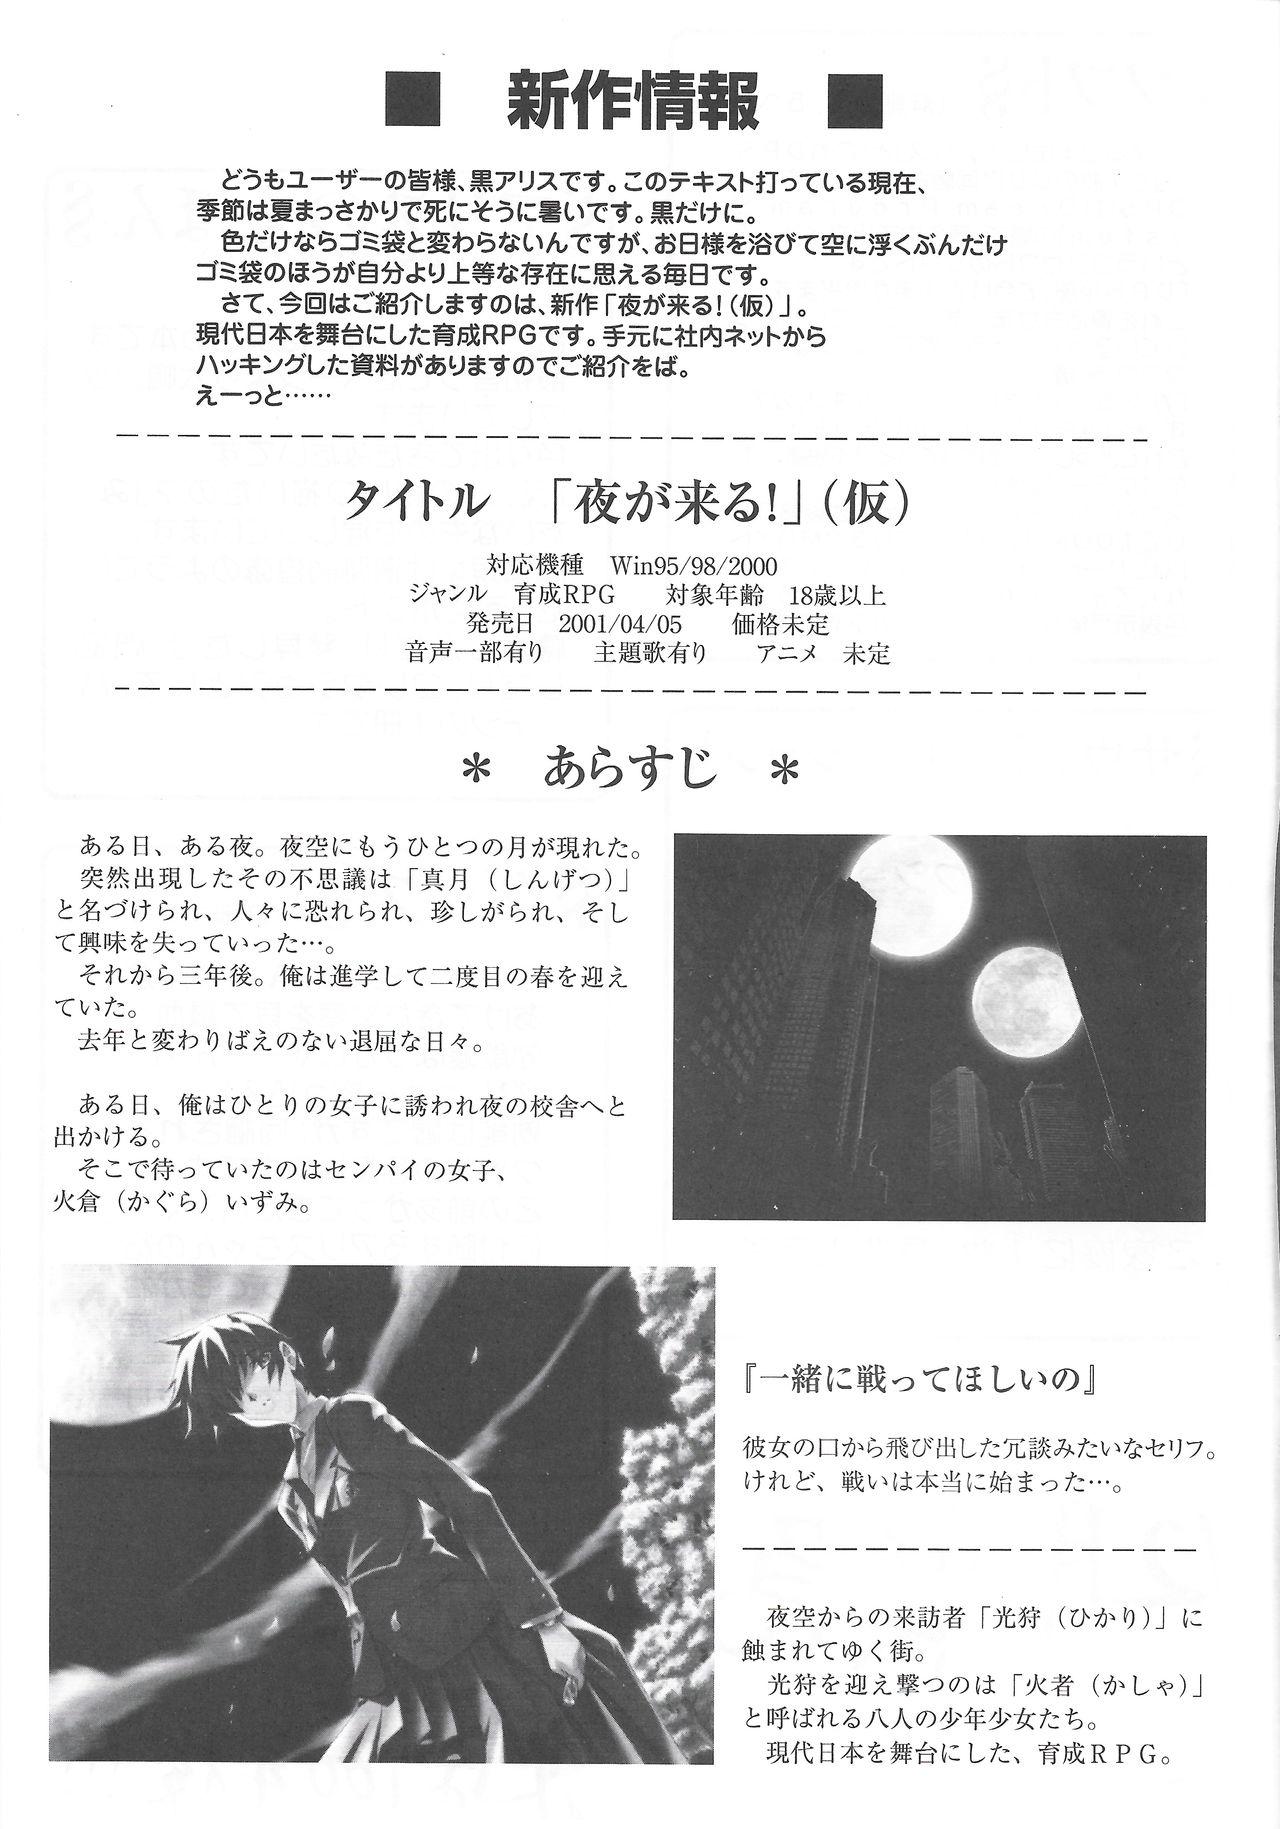 Arisu no Denchi Bakudan Vol. 13 9